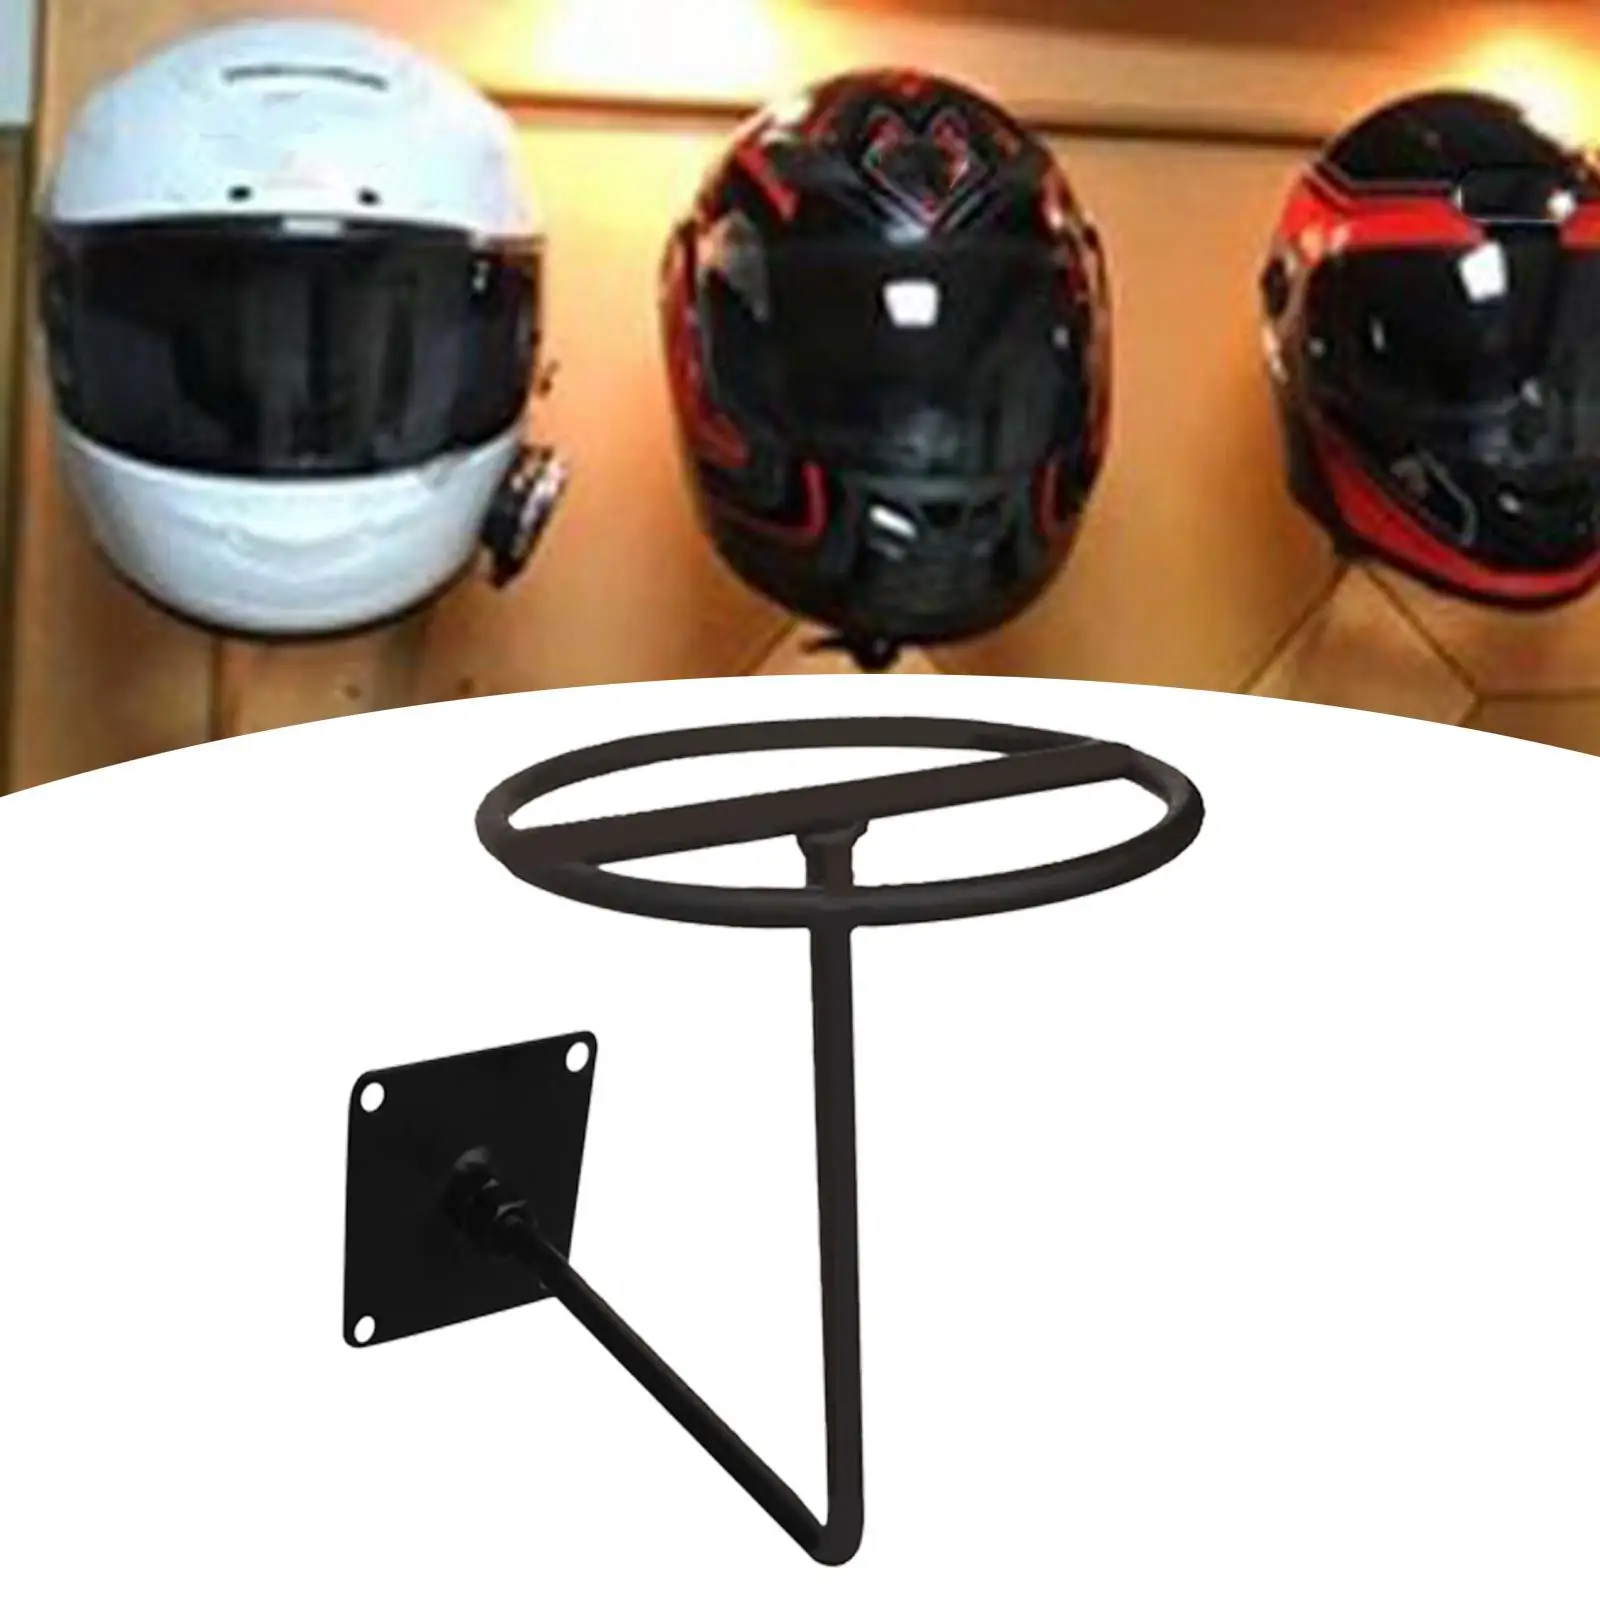 Helmet Holder Multifunctional Accessories Hook for Coats Caps Garage